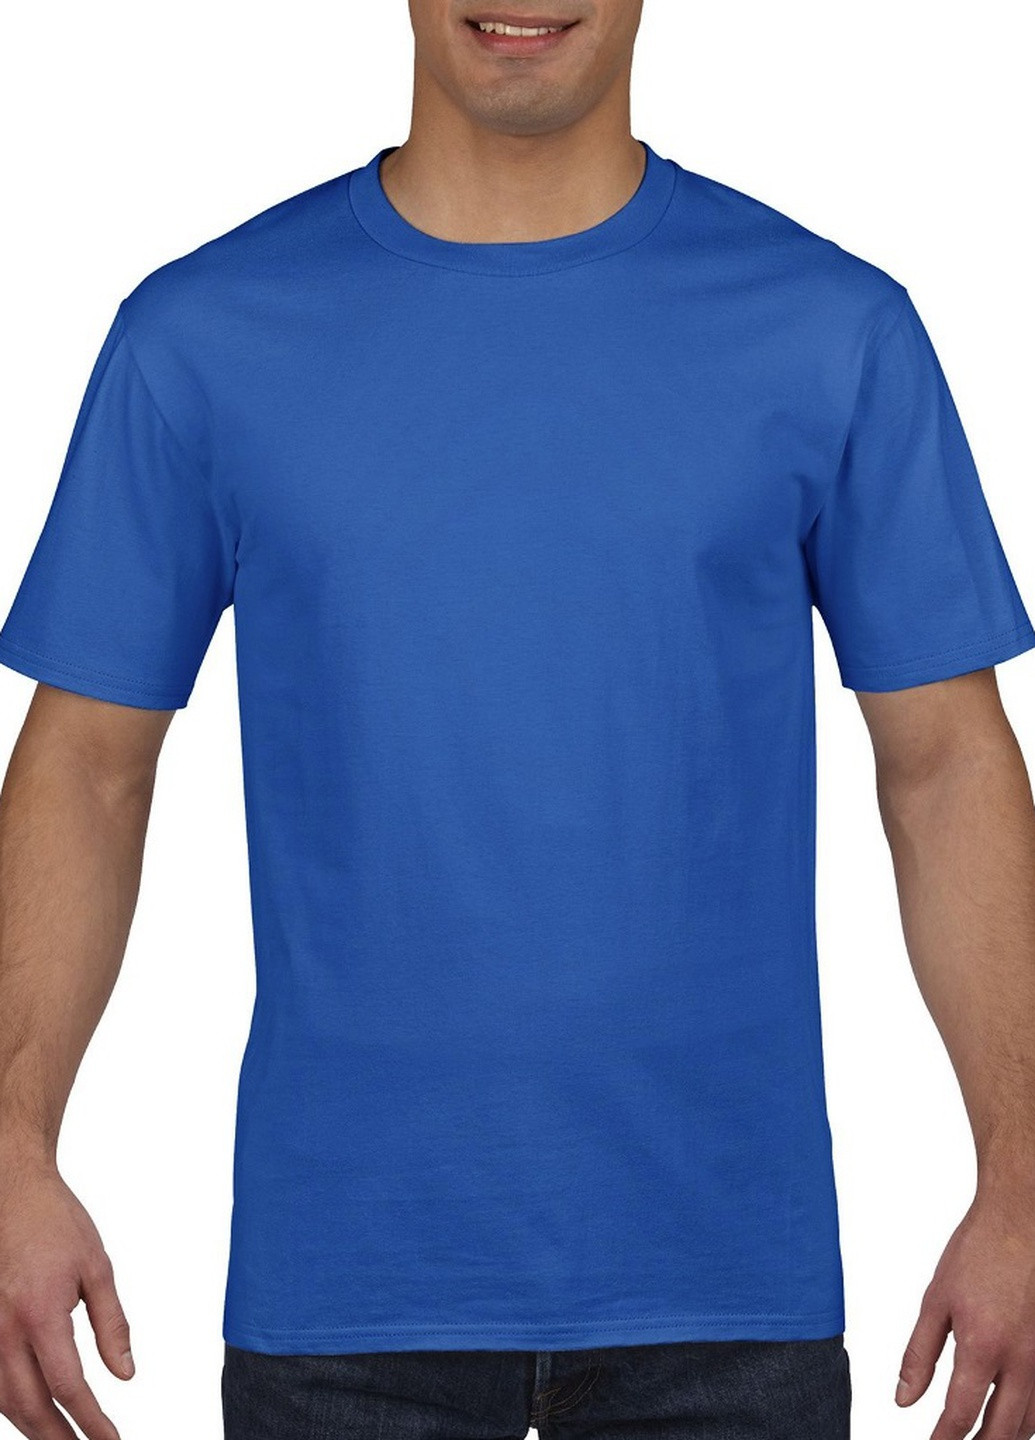 Синяя футболка базовая хлопковая синяя Gildan Premium Cotton